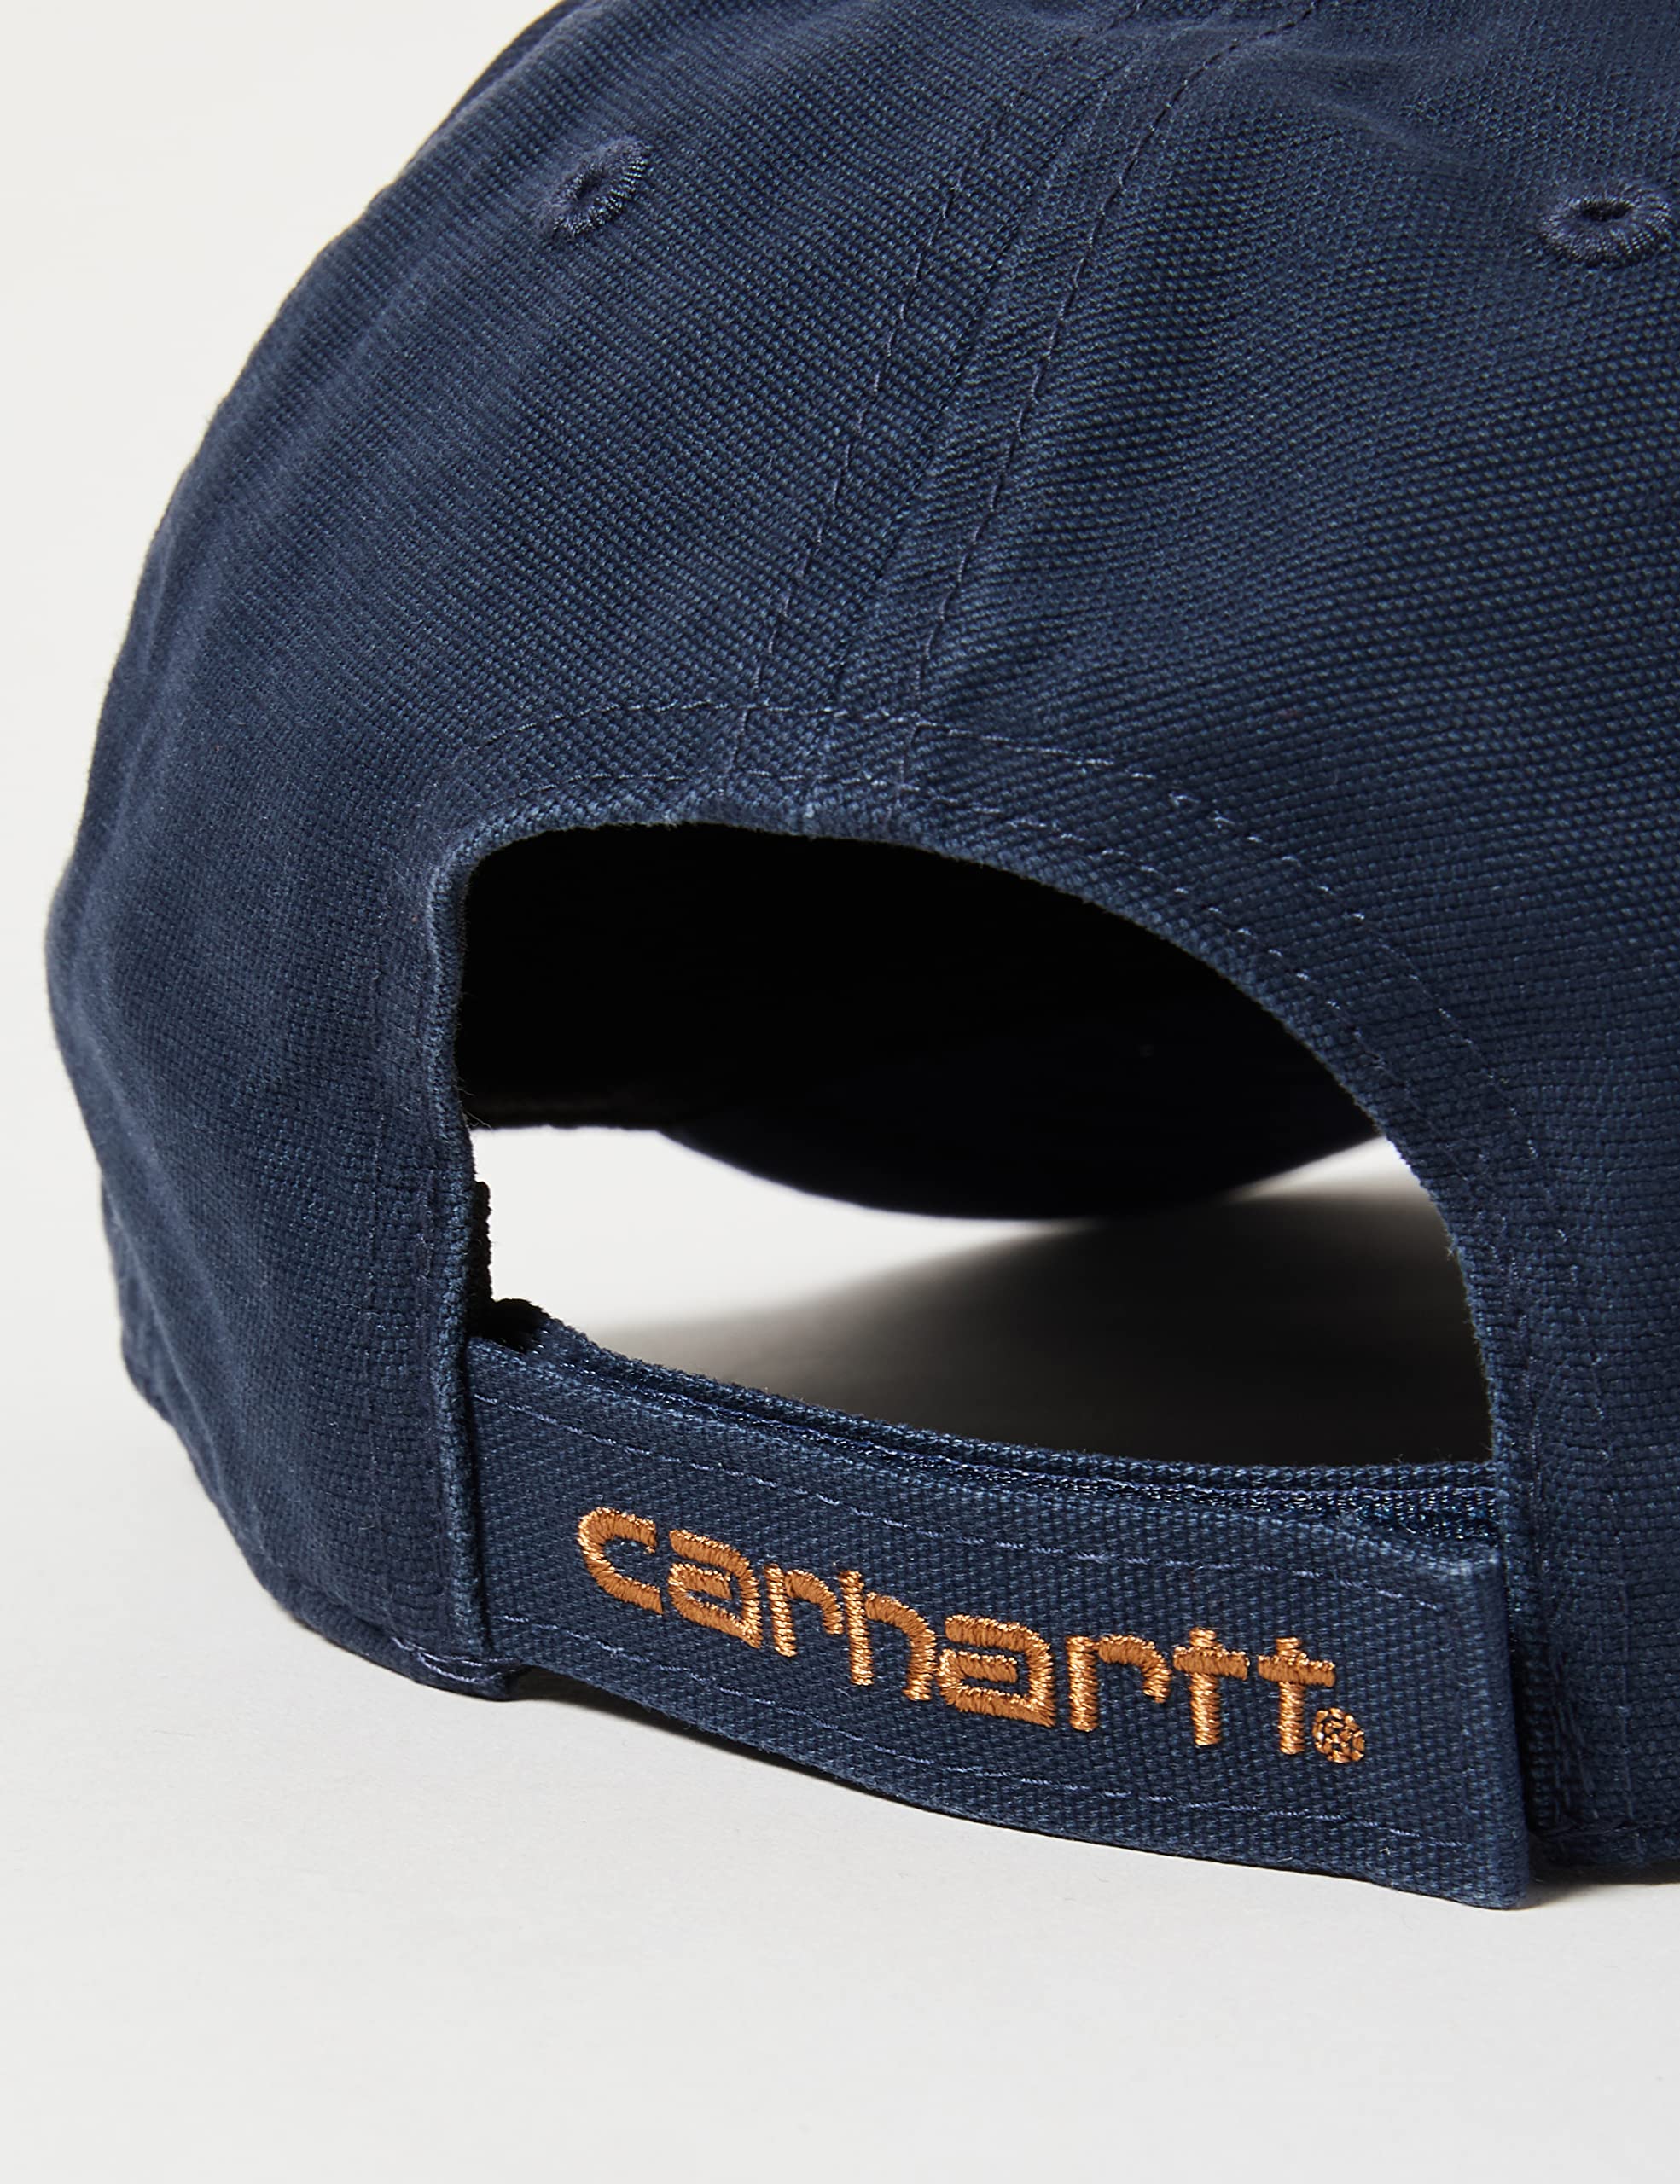 Carhartt Men's Canvas Cap